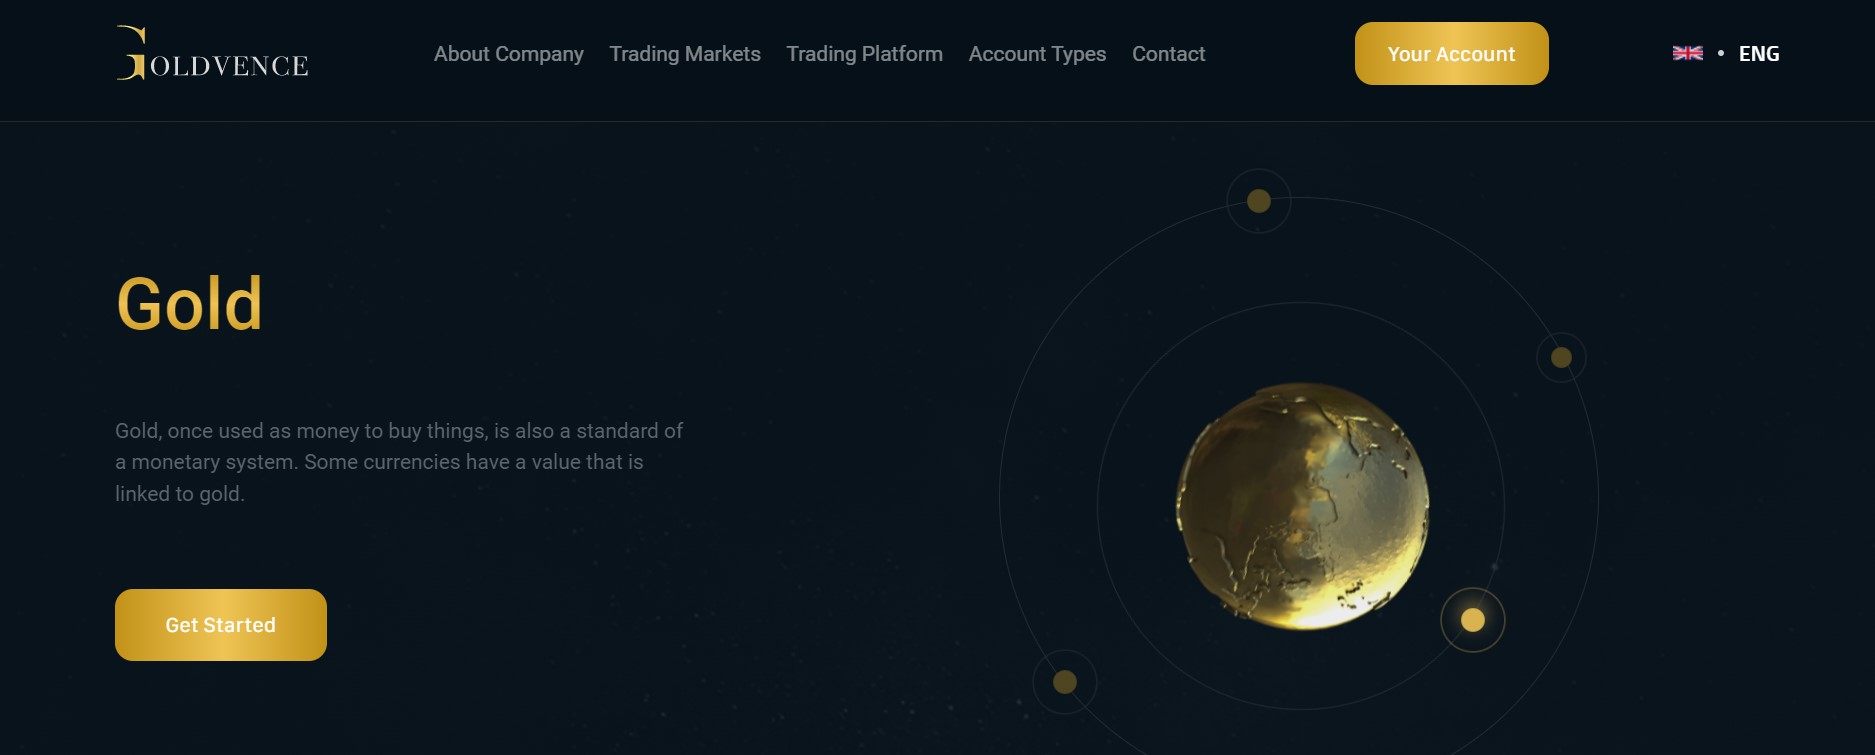 Goldvence trading platform